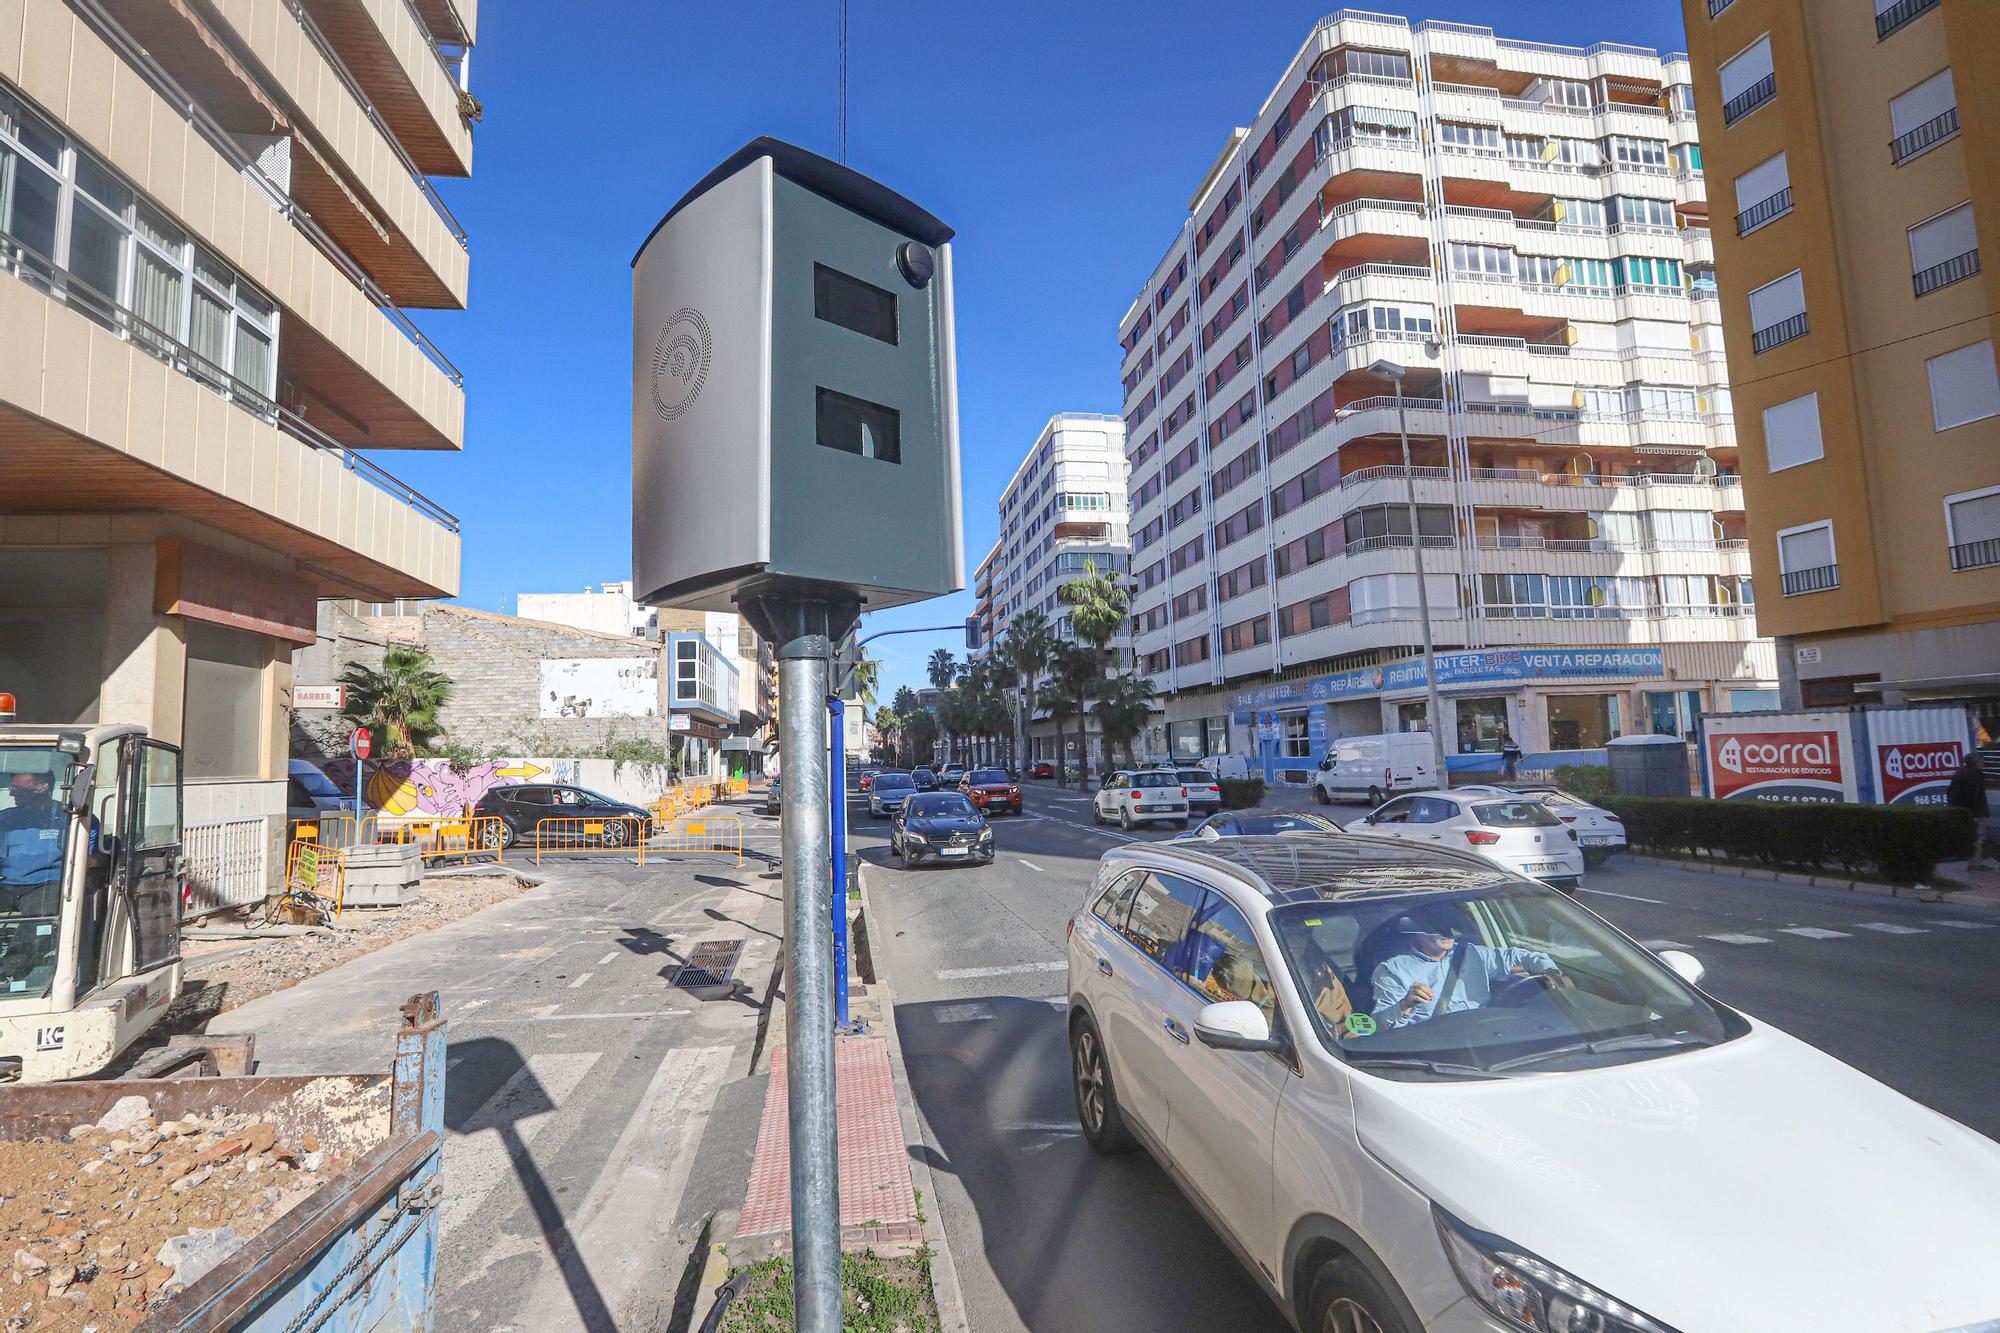 Torrevieja controla la velocidad de los vehículos dentro de la ciudad con tres nuevos radares fijos